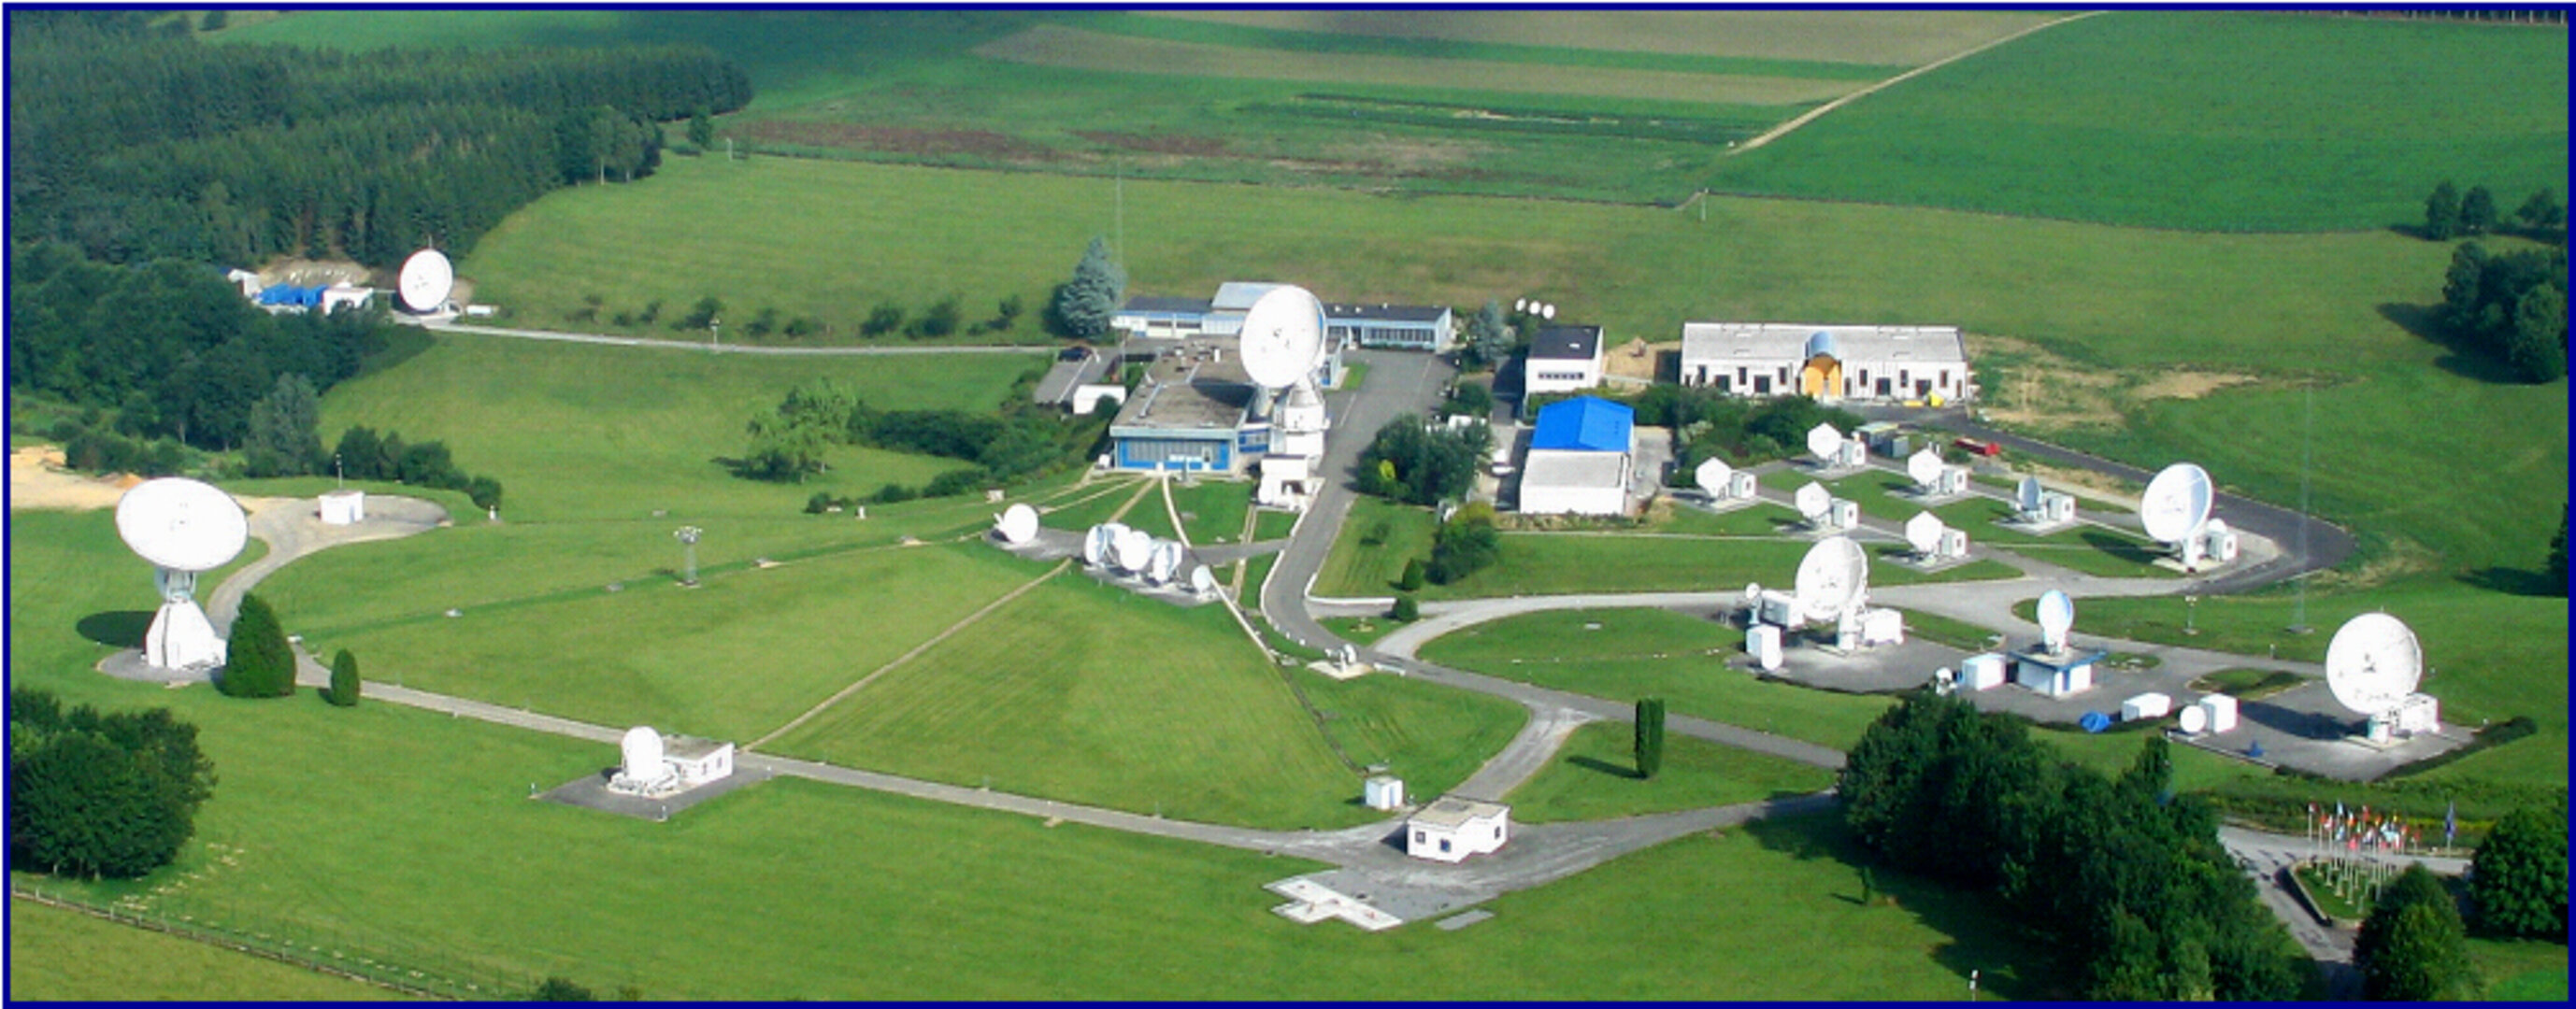 La station ESA de Redu va s’agrandir pour avoir un rôle clef pour le système Galileo.